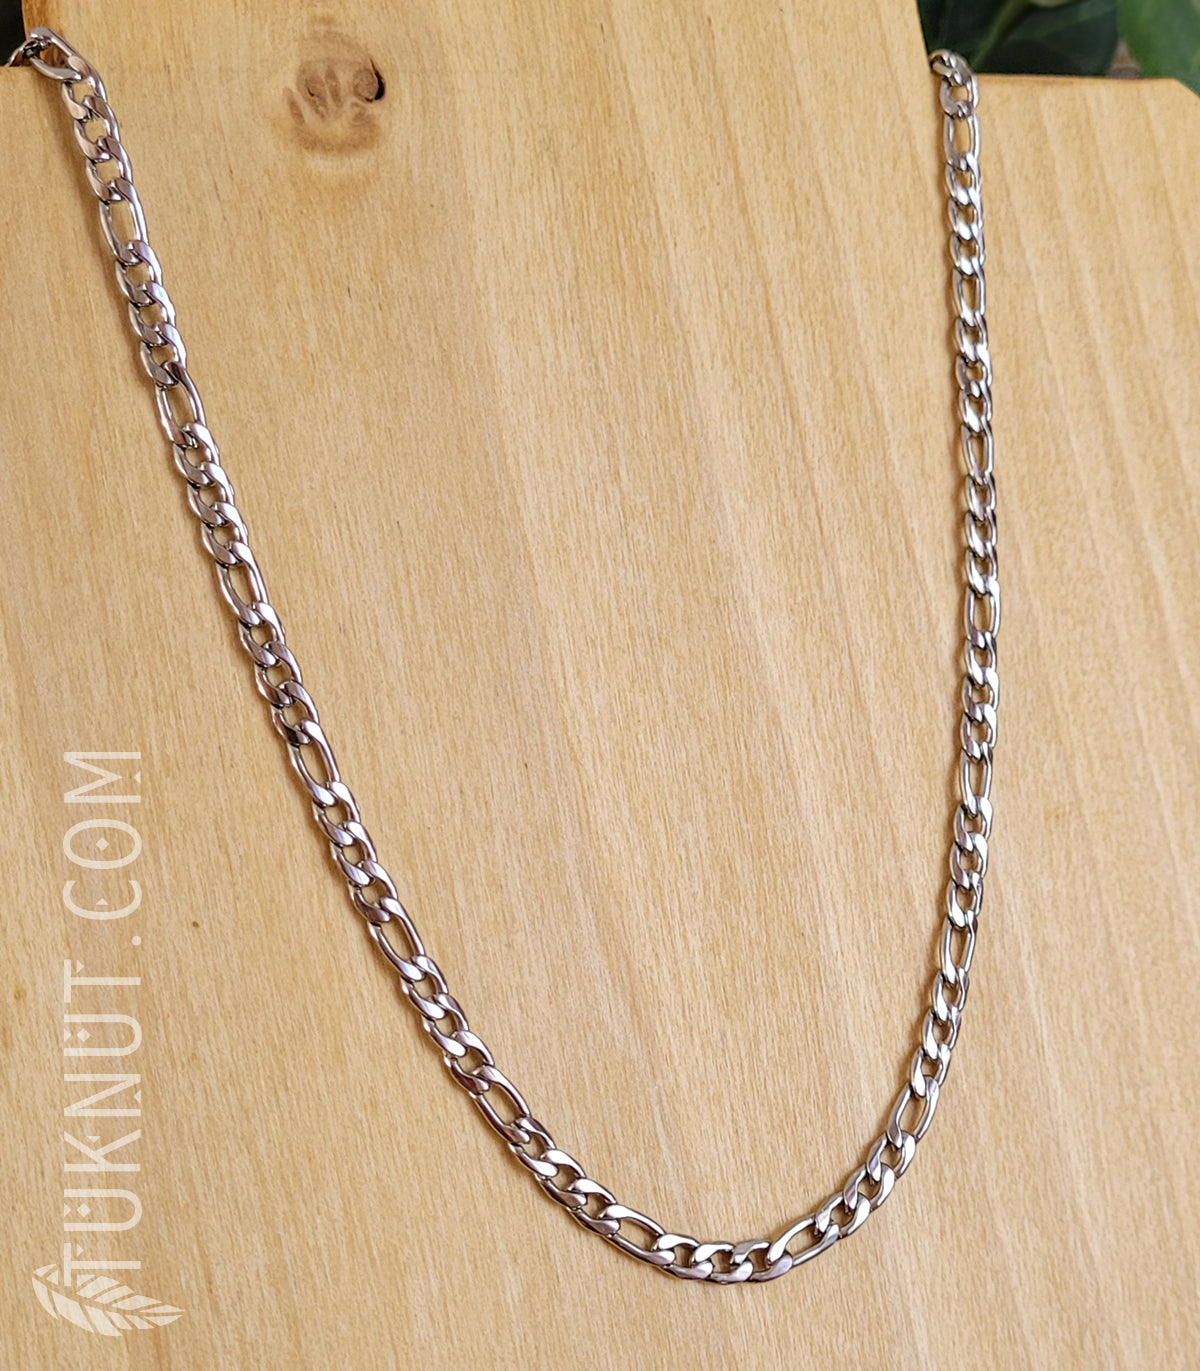 Collier avec chaîne (4.5mm de largeur) en acier inoxydable (couleur : argent) TUKNUT